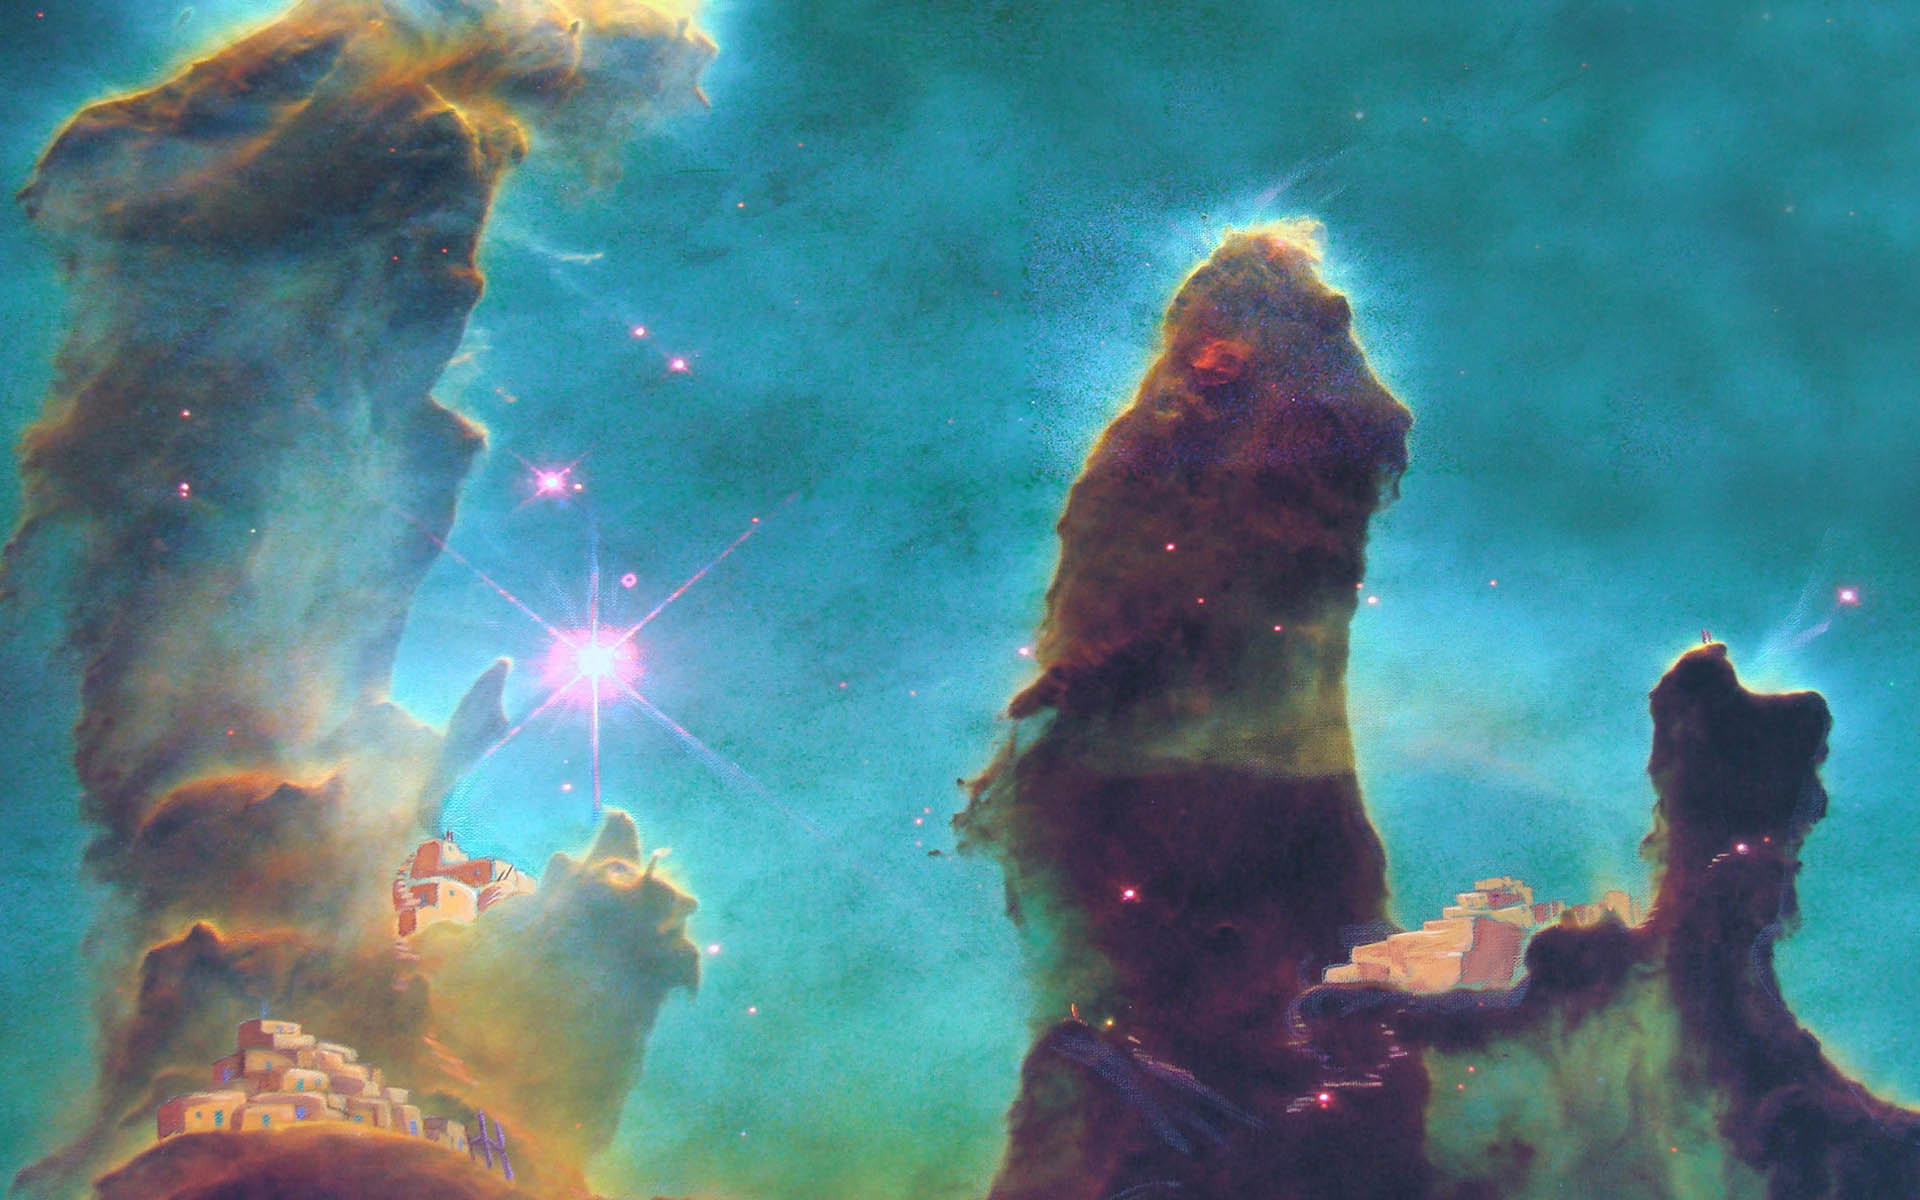 Eagle Nebula Wallpaper